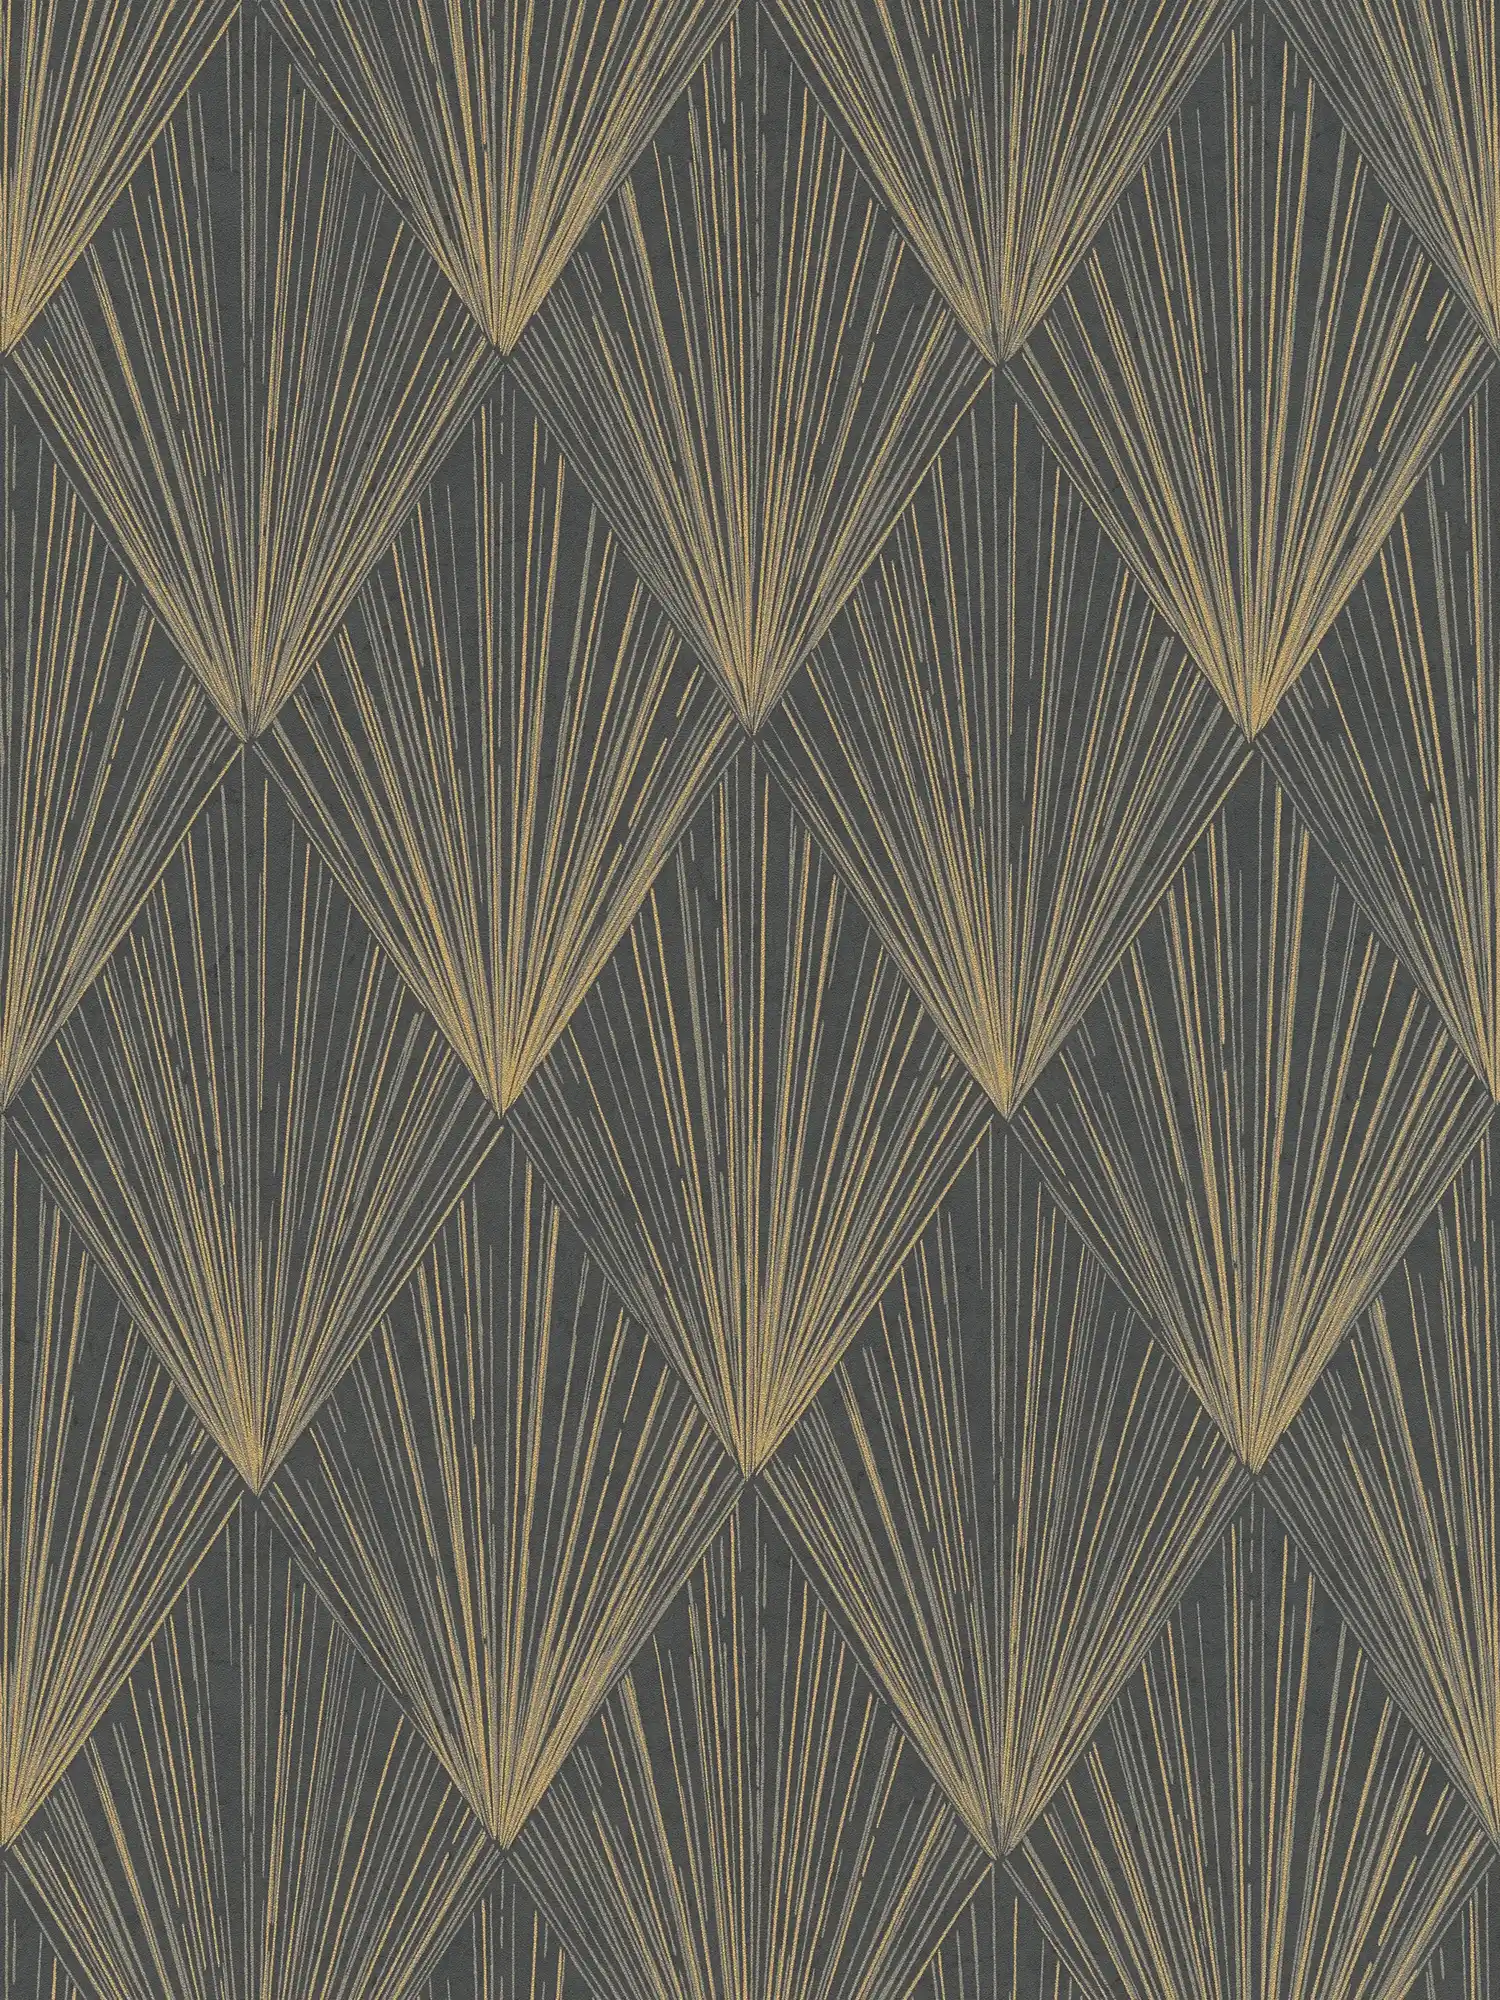 Zwart vliesbehang met metallic patroon - beige, metallic, zwart
